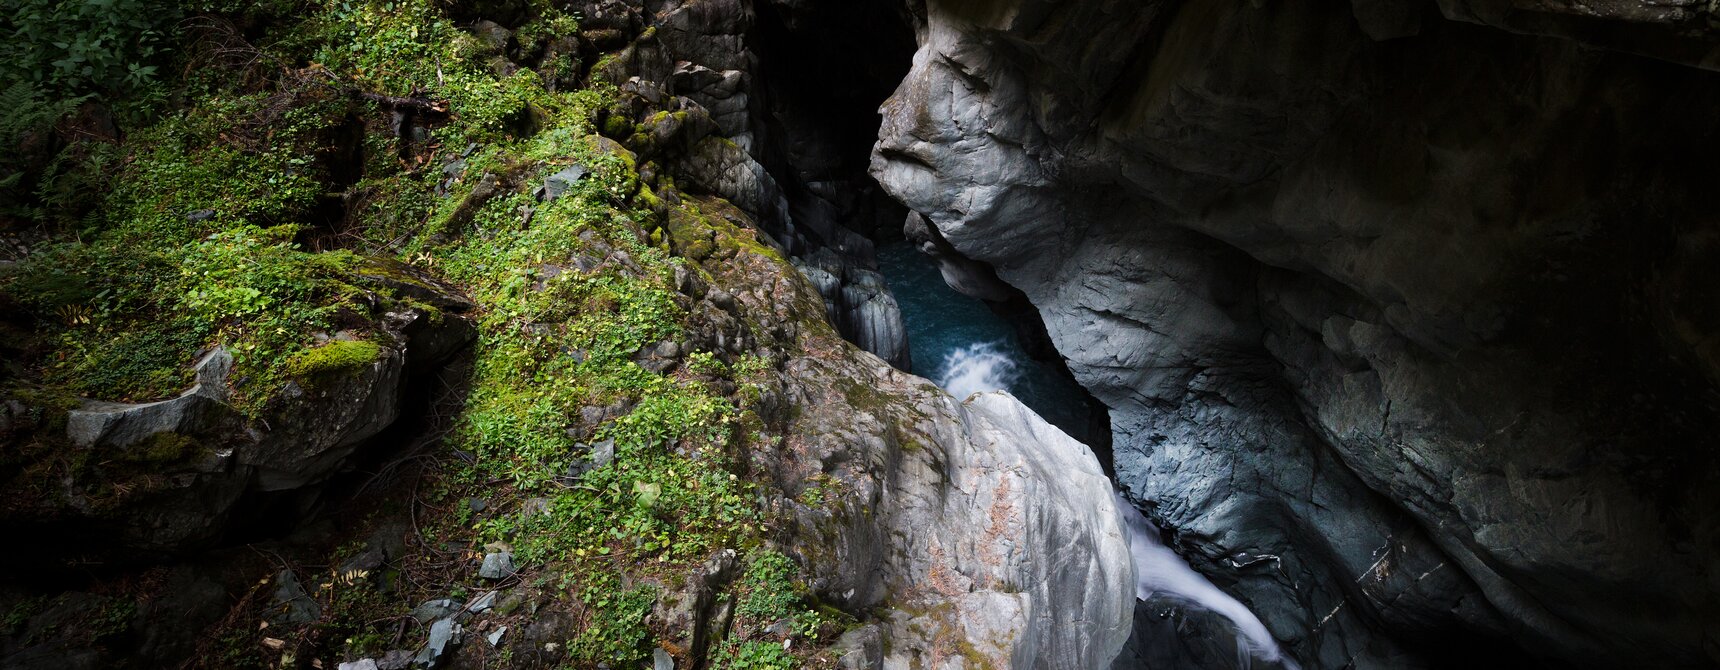 Gorges du Gorner jeu d'eau bleu entre la faune et la roche | © Pascal Gertschen 